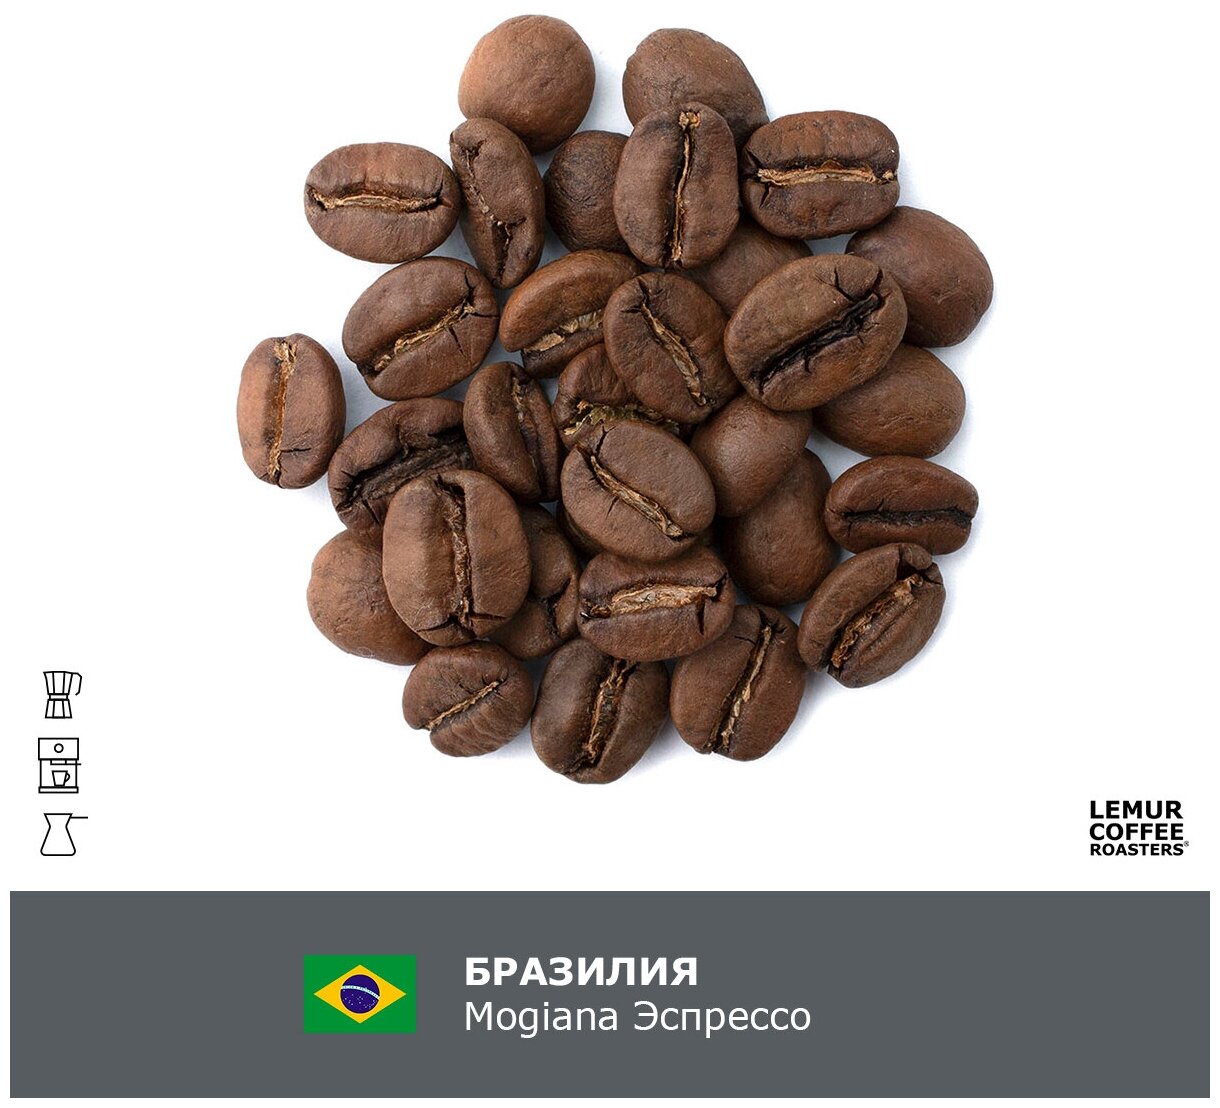 Свежеобжаренный кофе в зернах 1 кг Бразилия Можиана Эспрессо / Mogiana Lemur Coffee Roasters, дата обжарки 22.05.2024